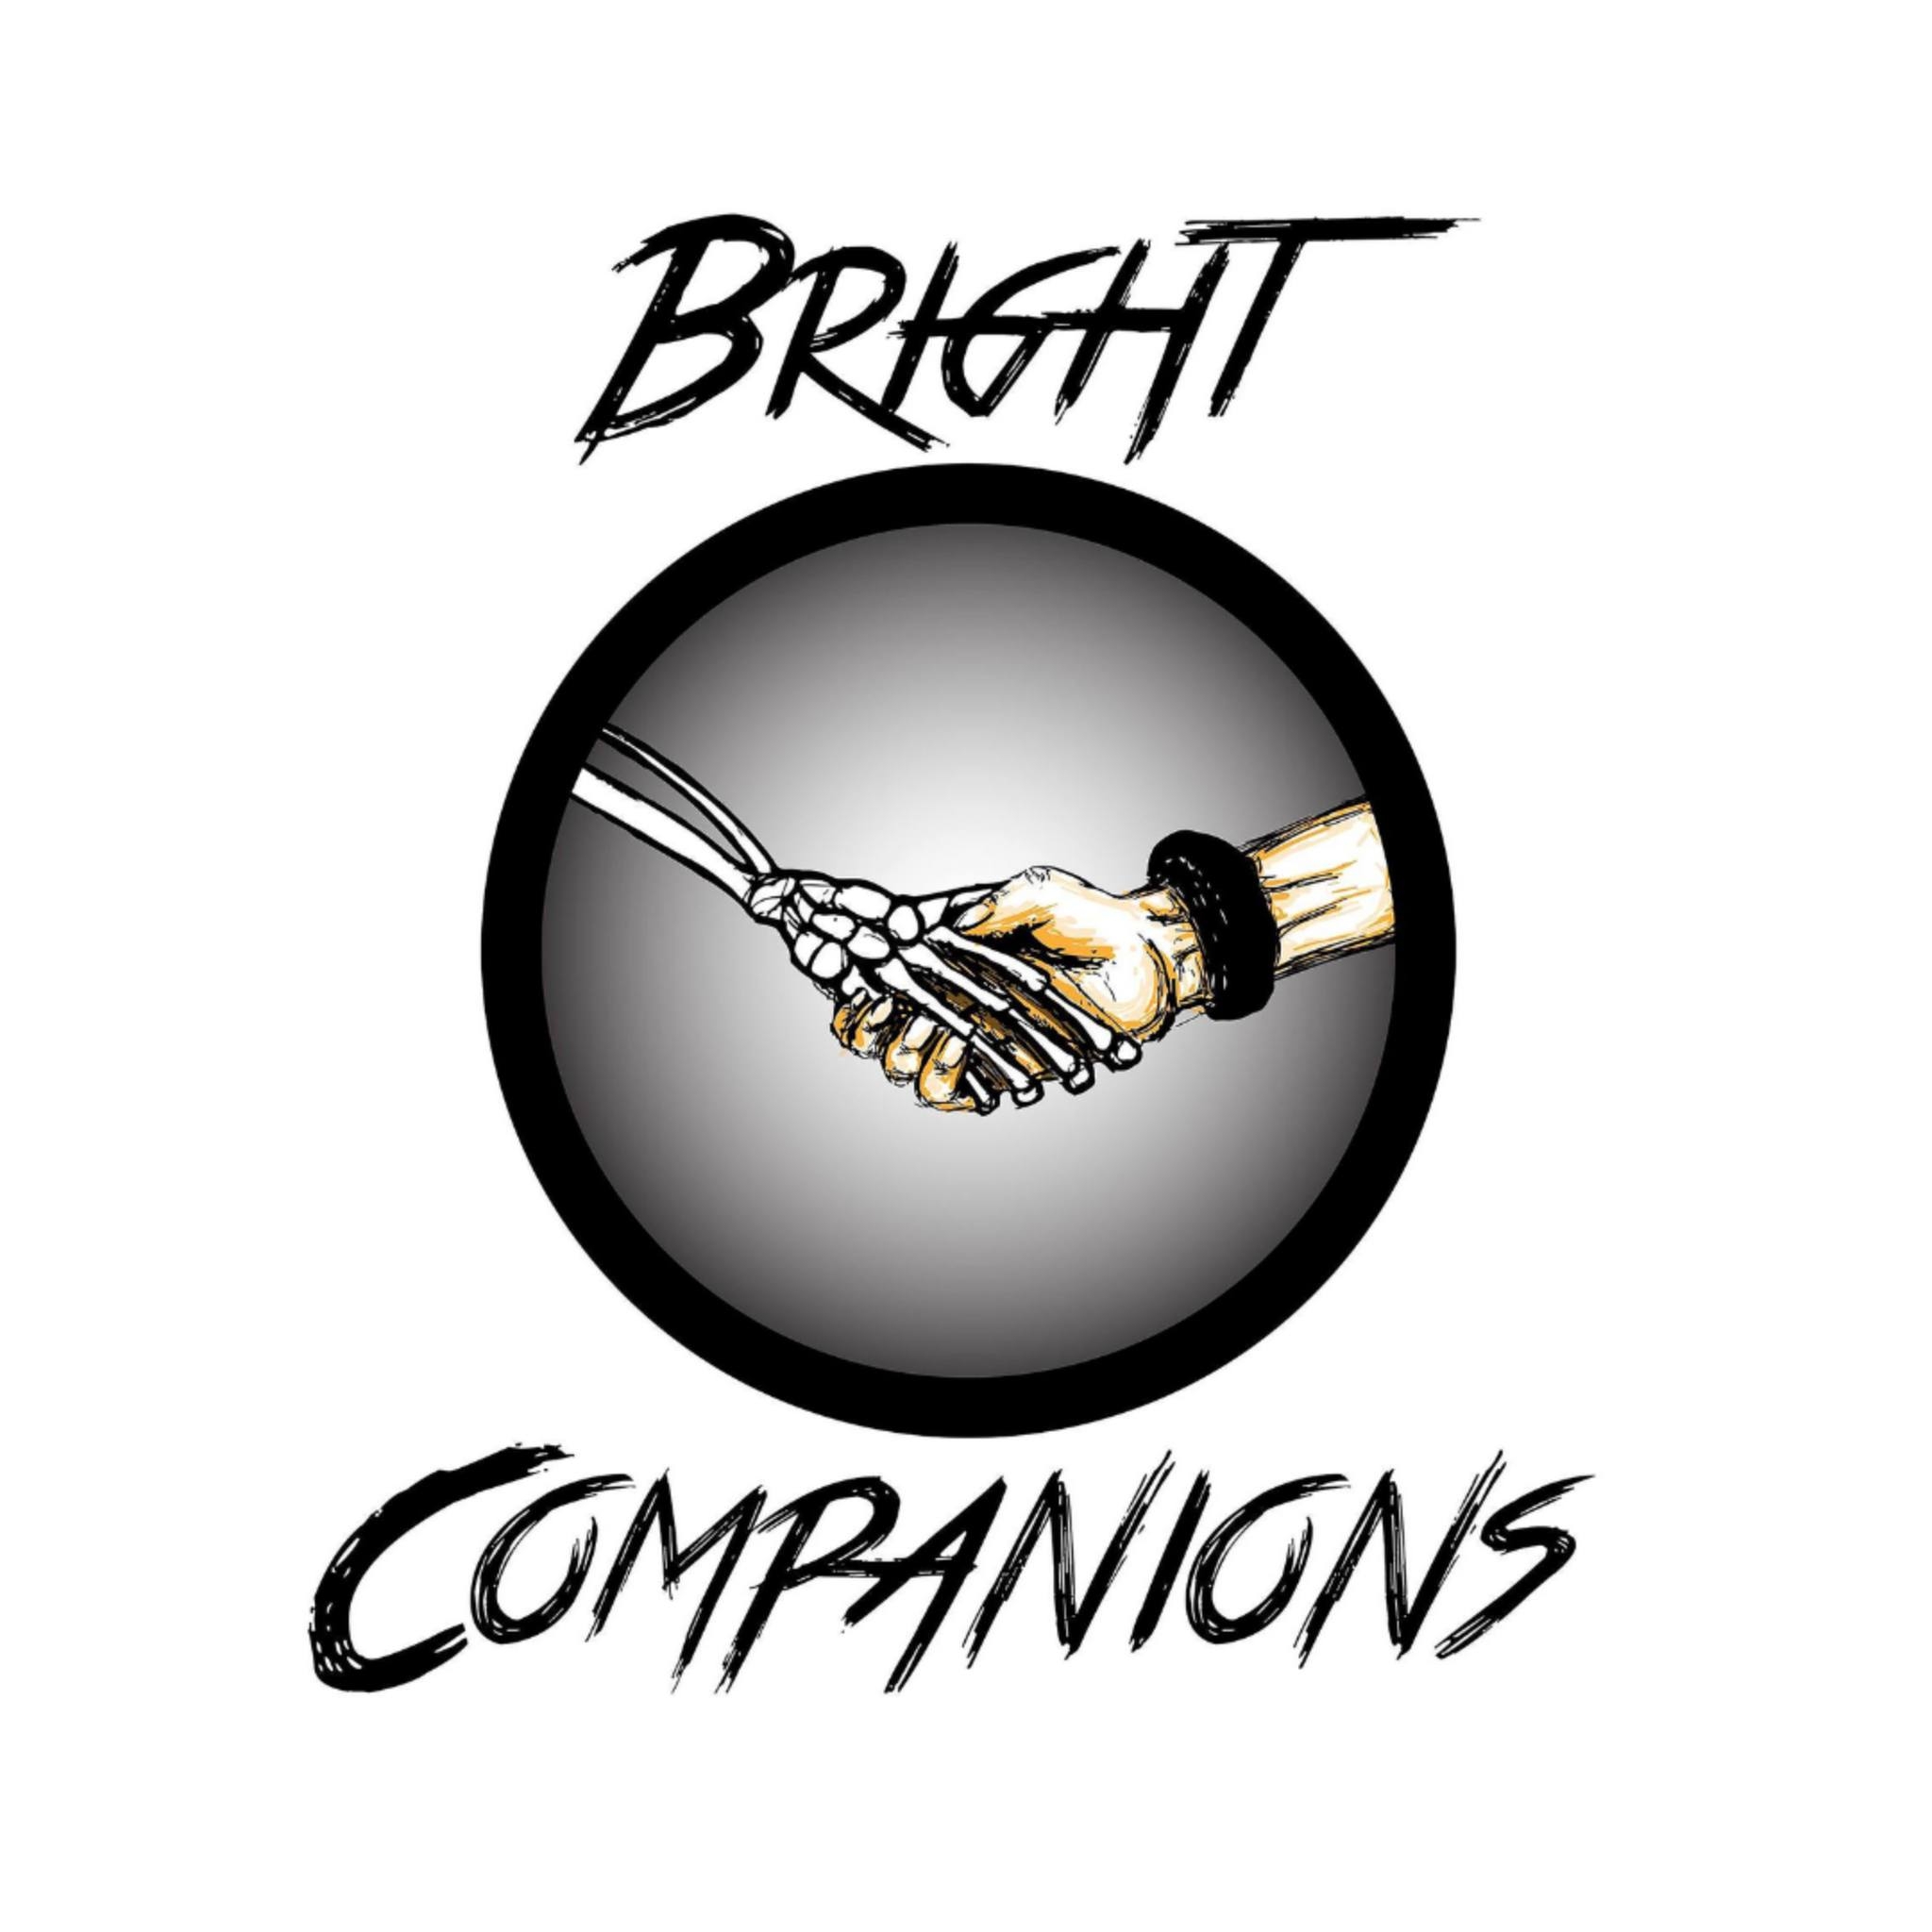 Bright Companions